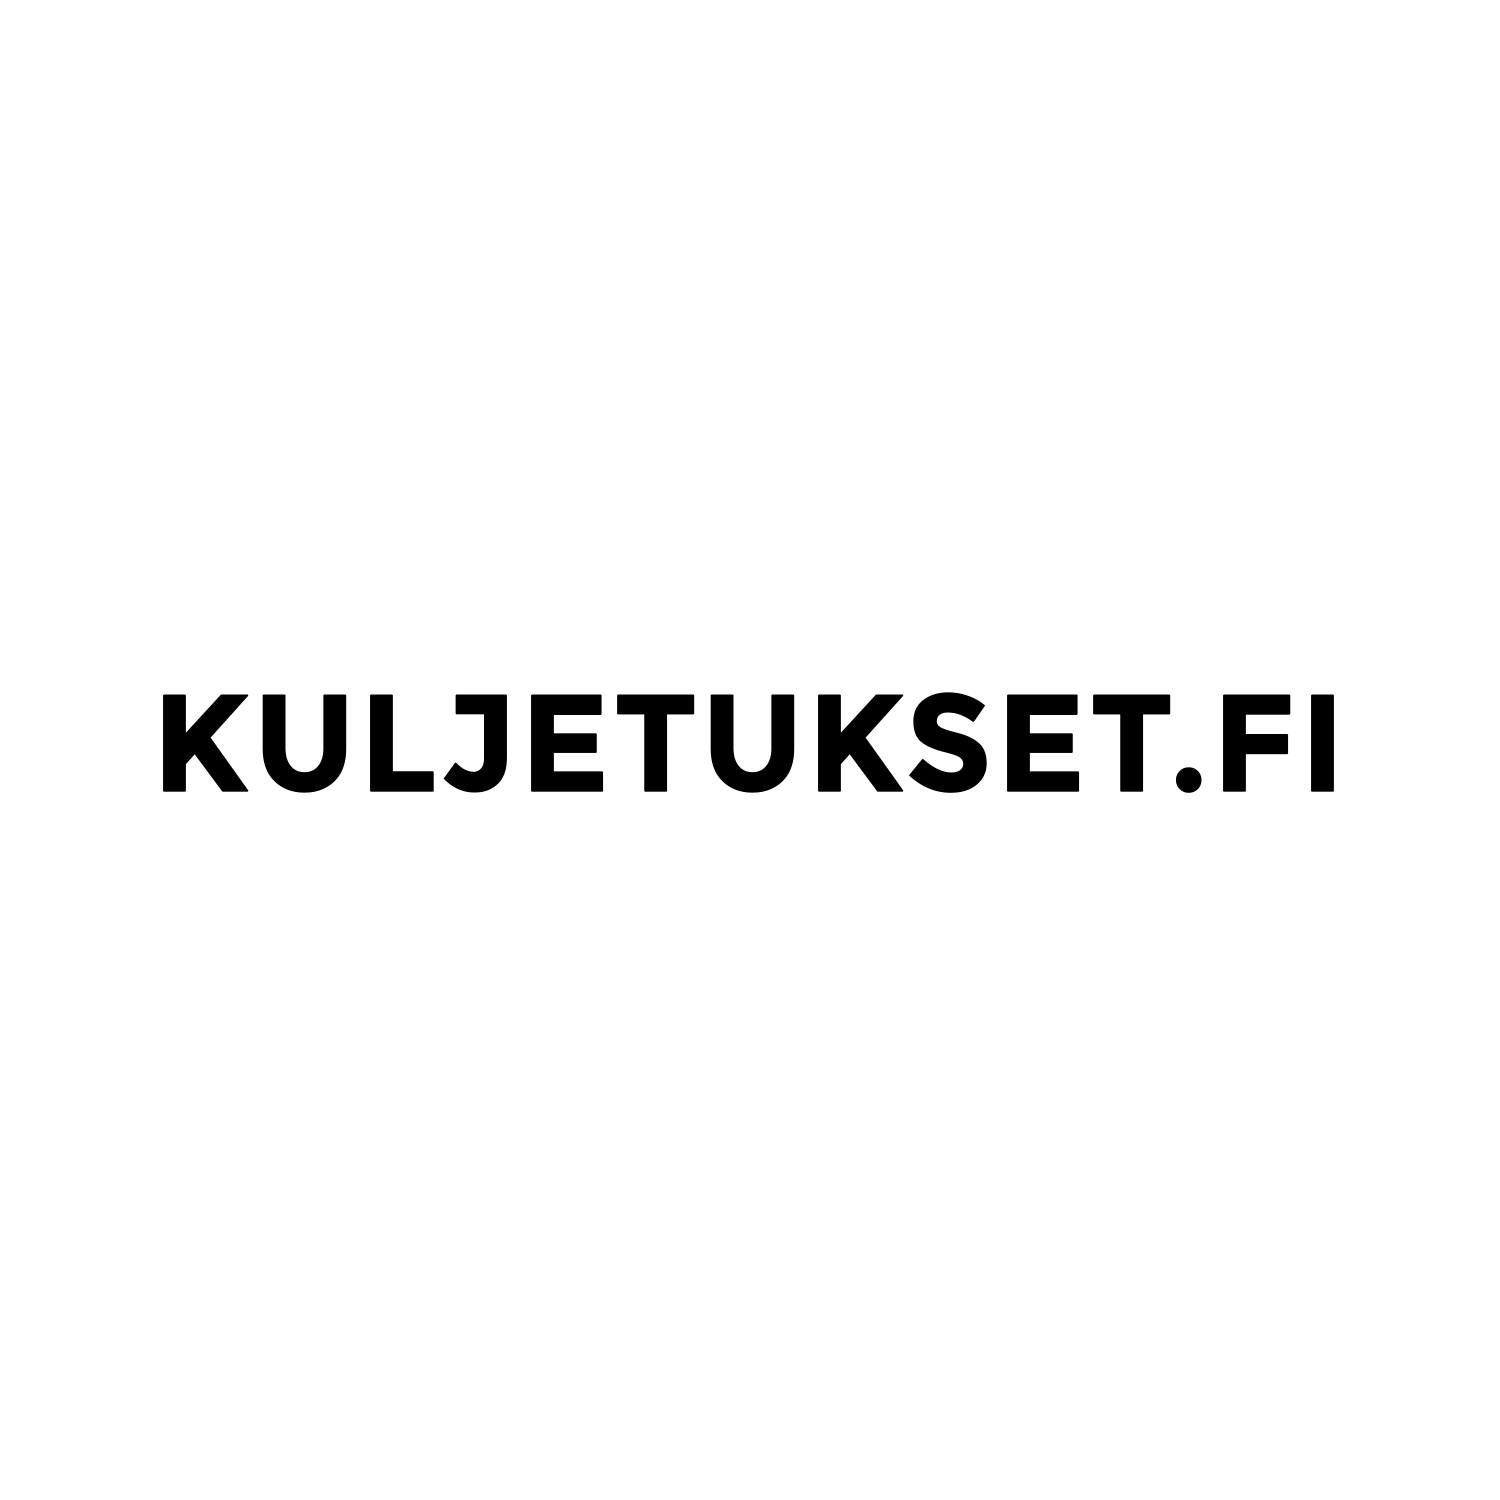 kuljetukset.fi-logo